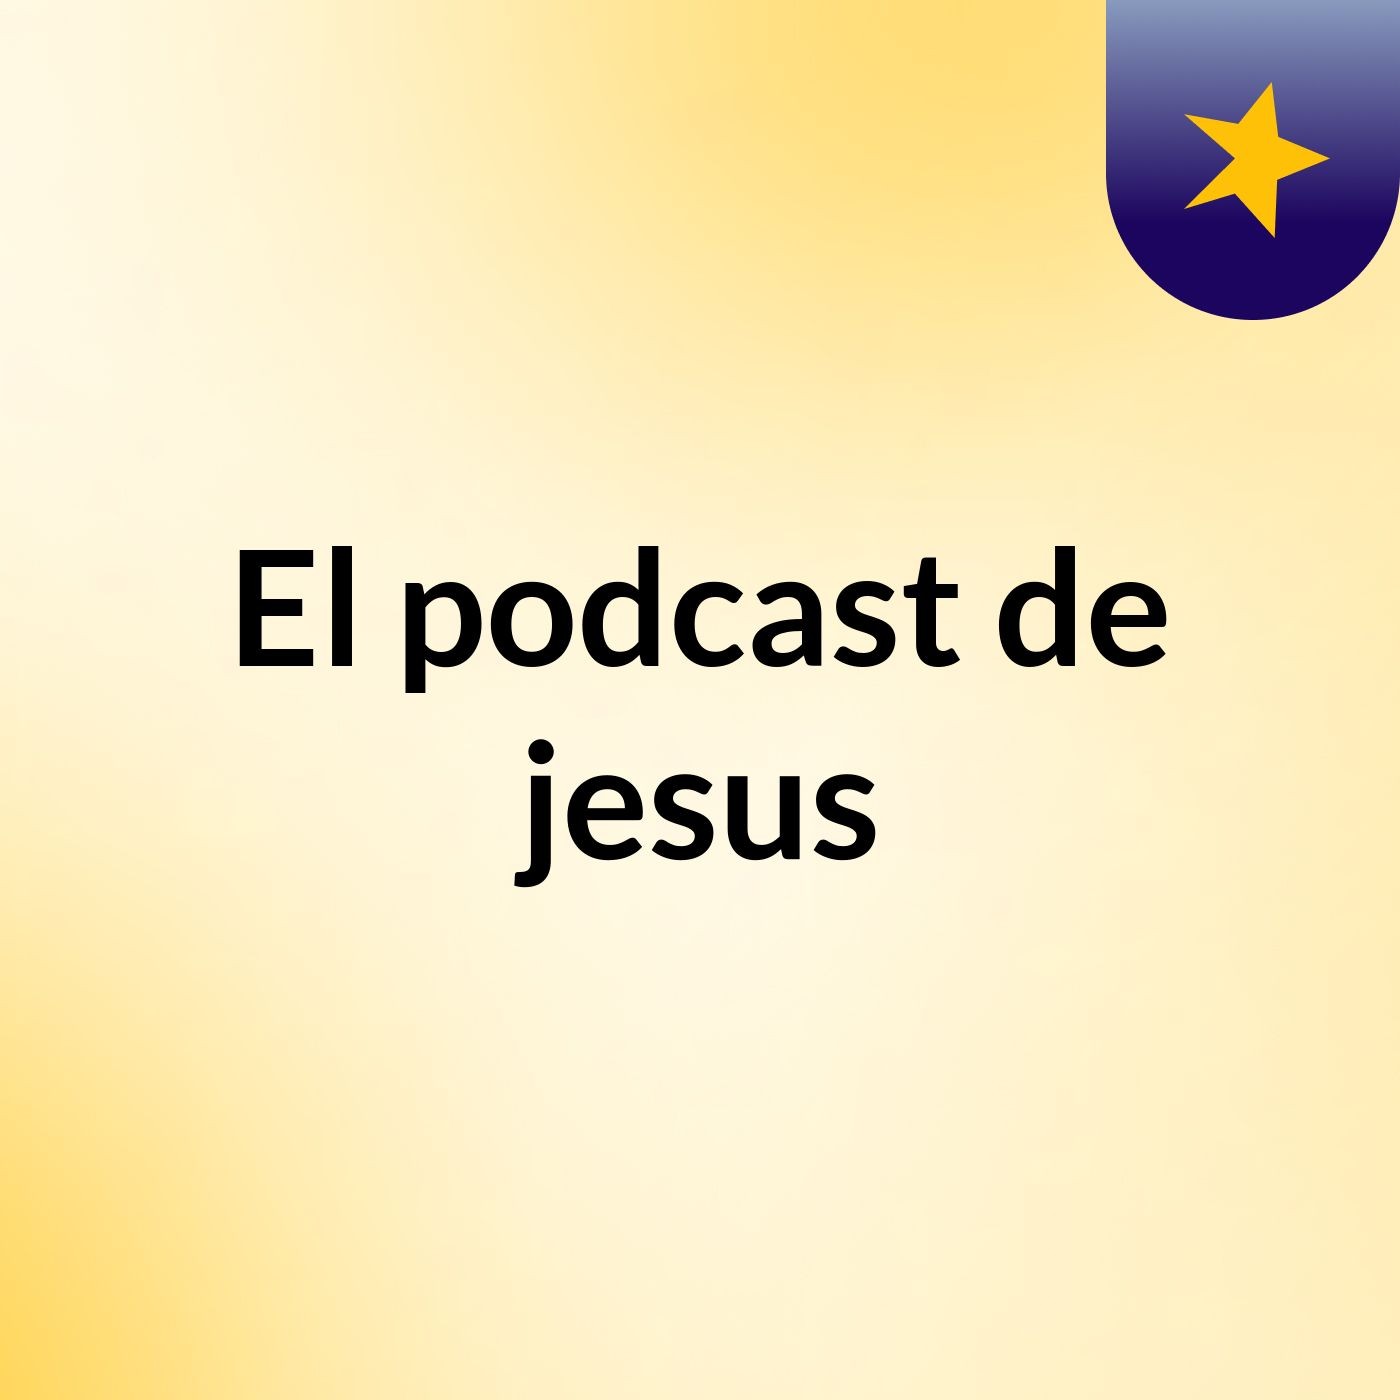 El podcast de jesus